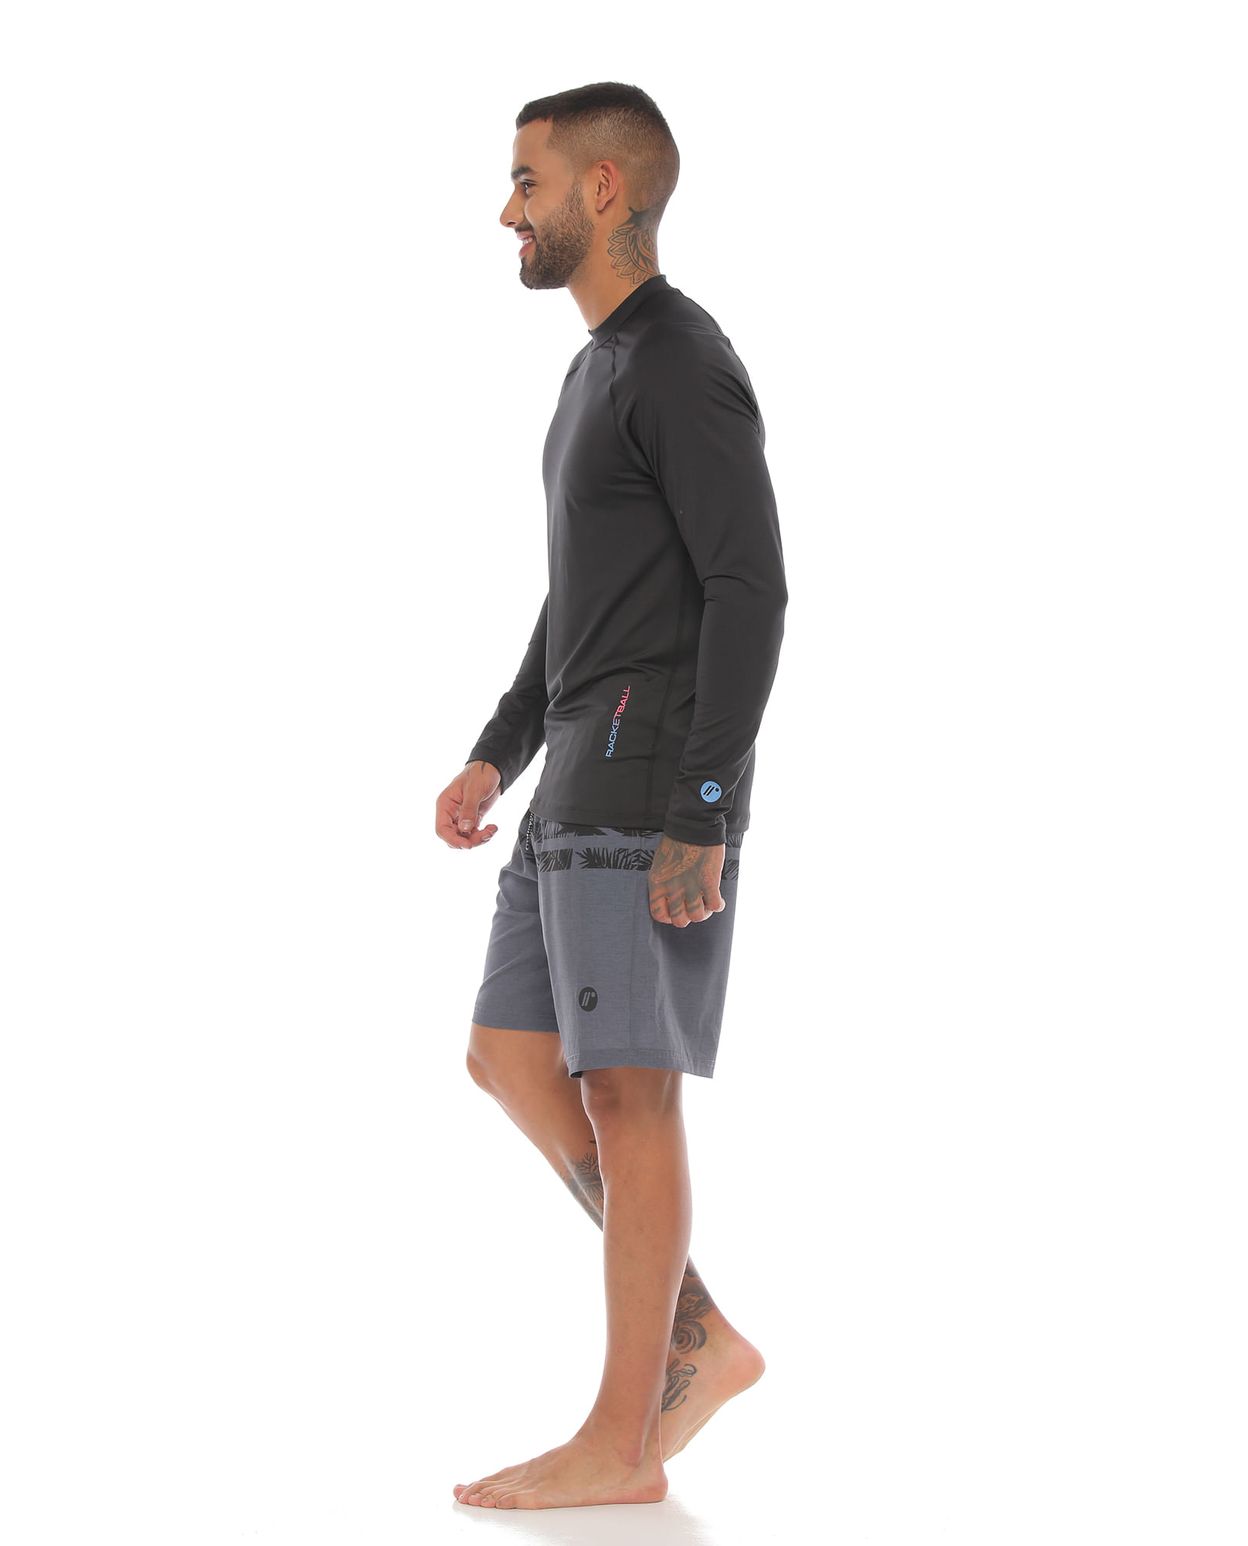 modelo con pantaloneta de playa larga y camibuso con proteccion uv color negro para hombre cuerpo completo parte lateral derecha